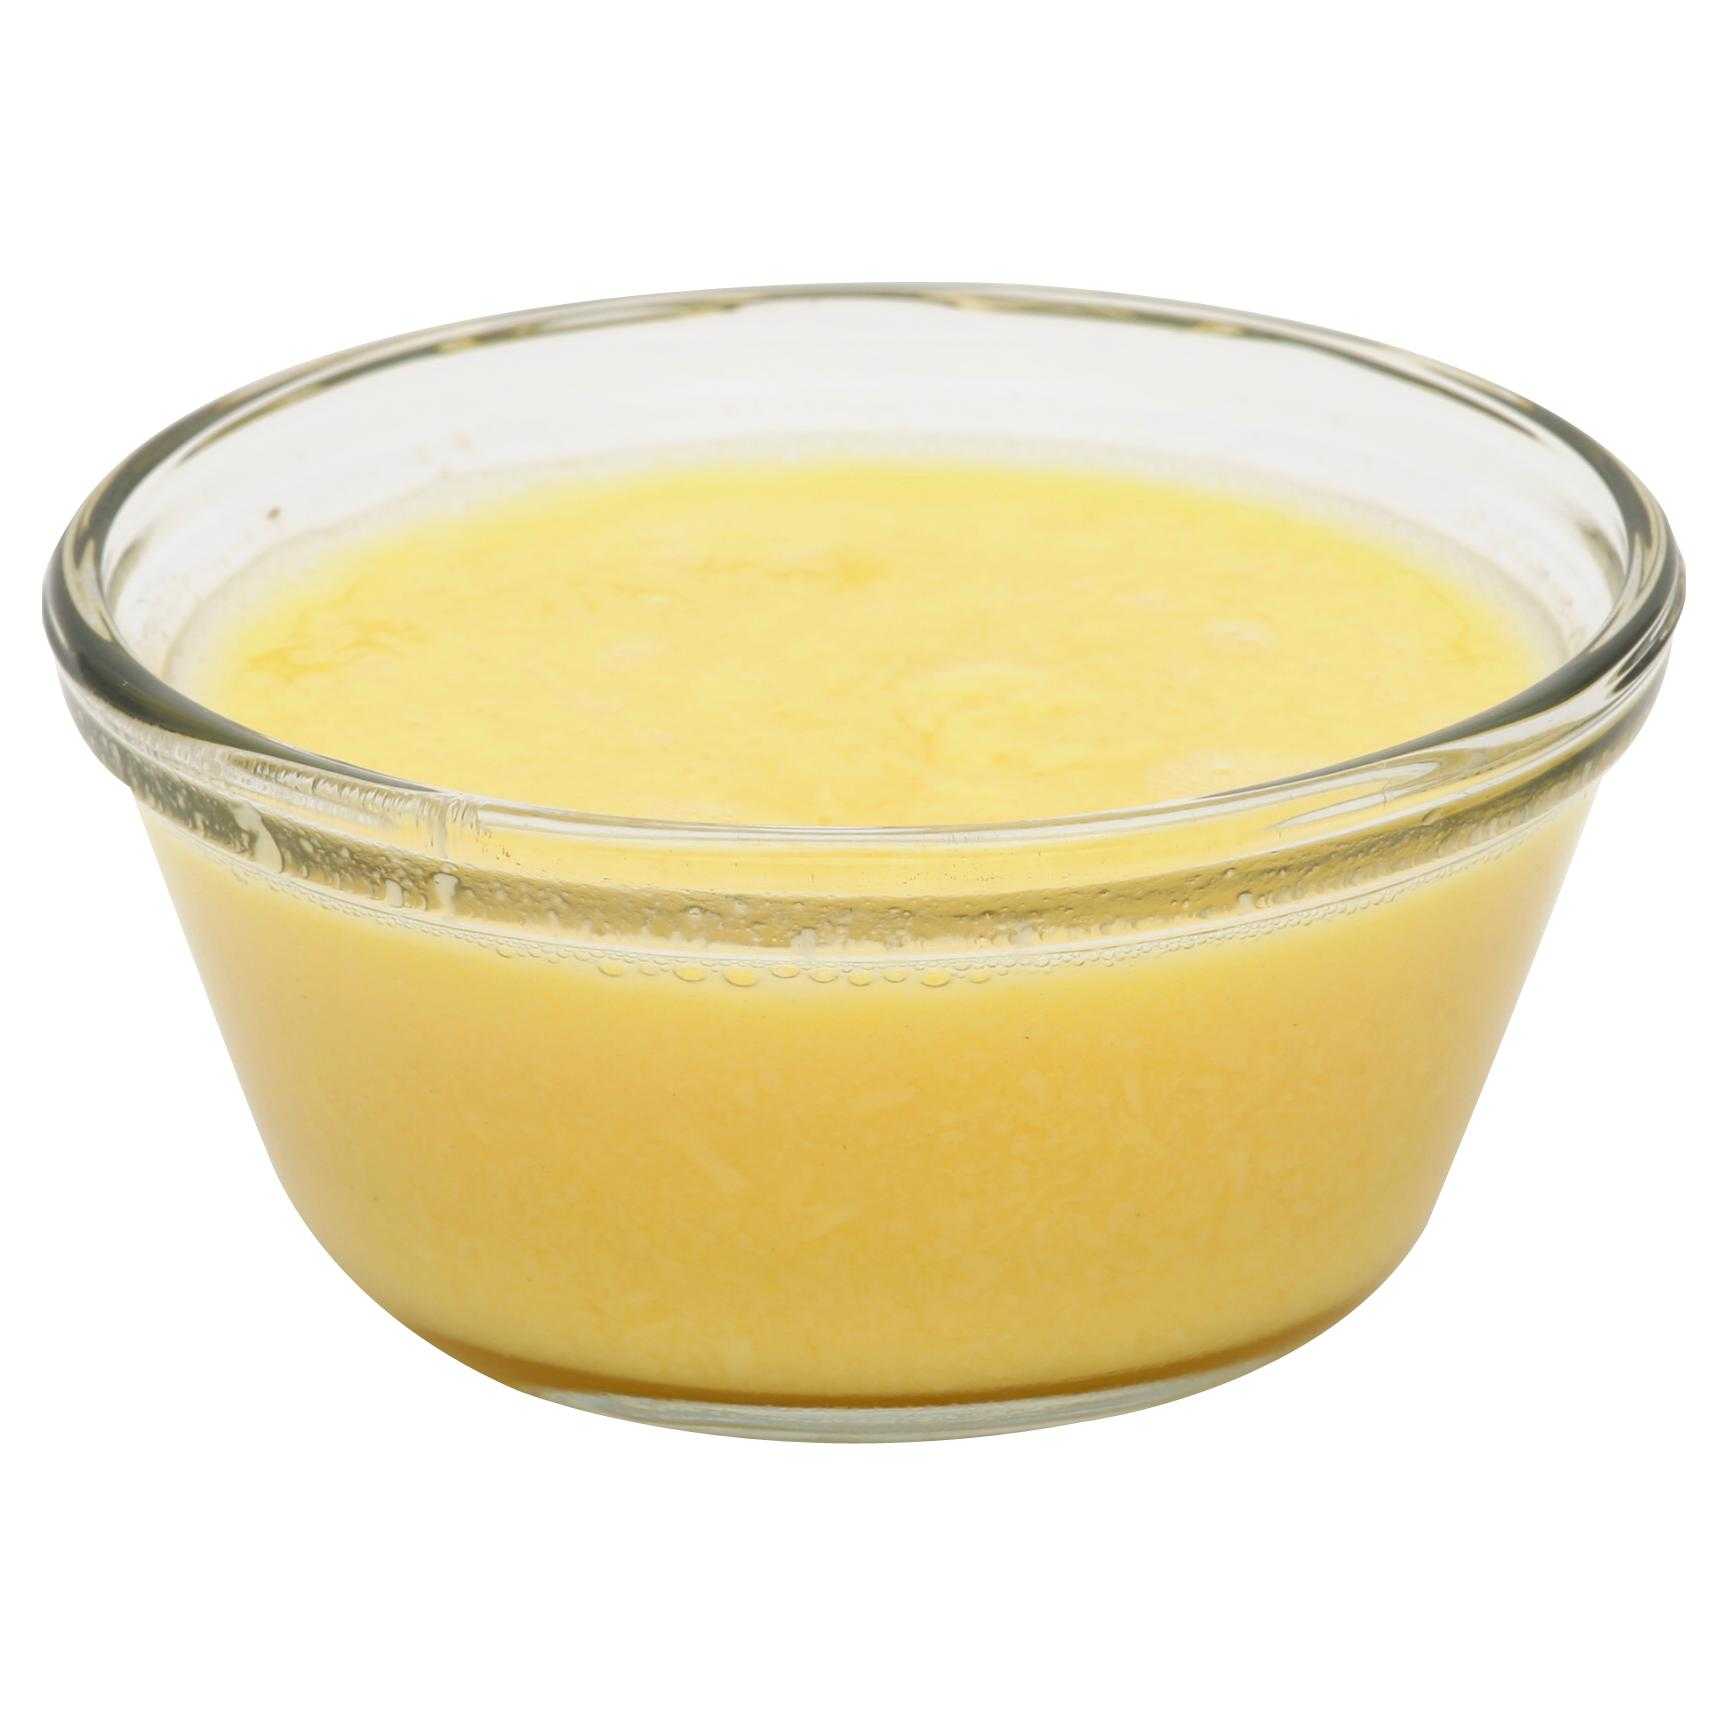 Papetti’s® Frozen Liquid Whole Eggs, 1/30 Lb Square Tub